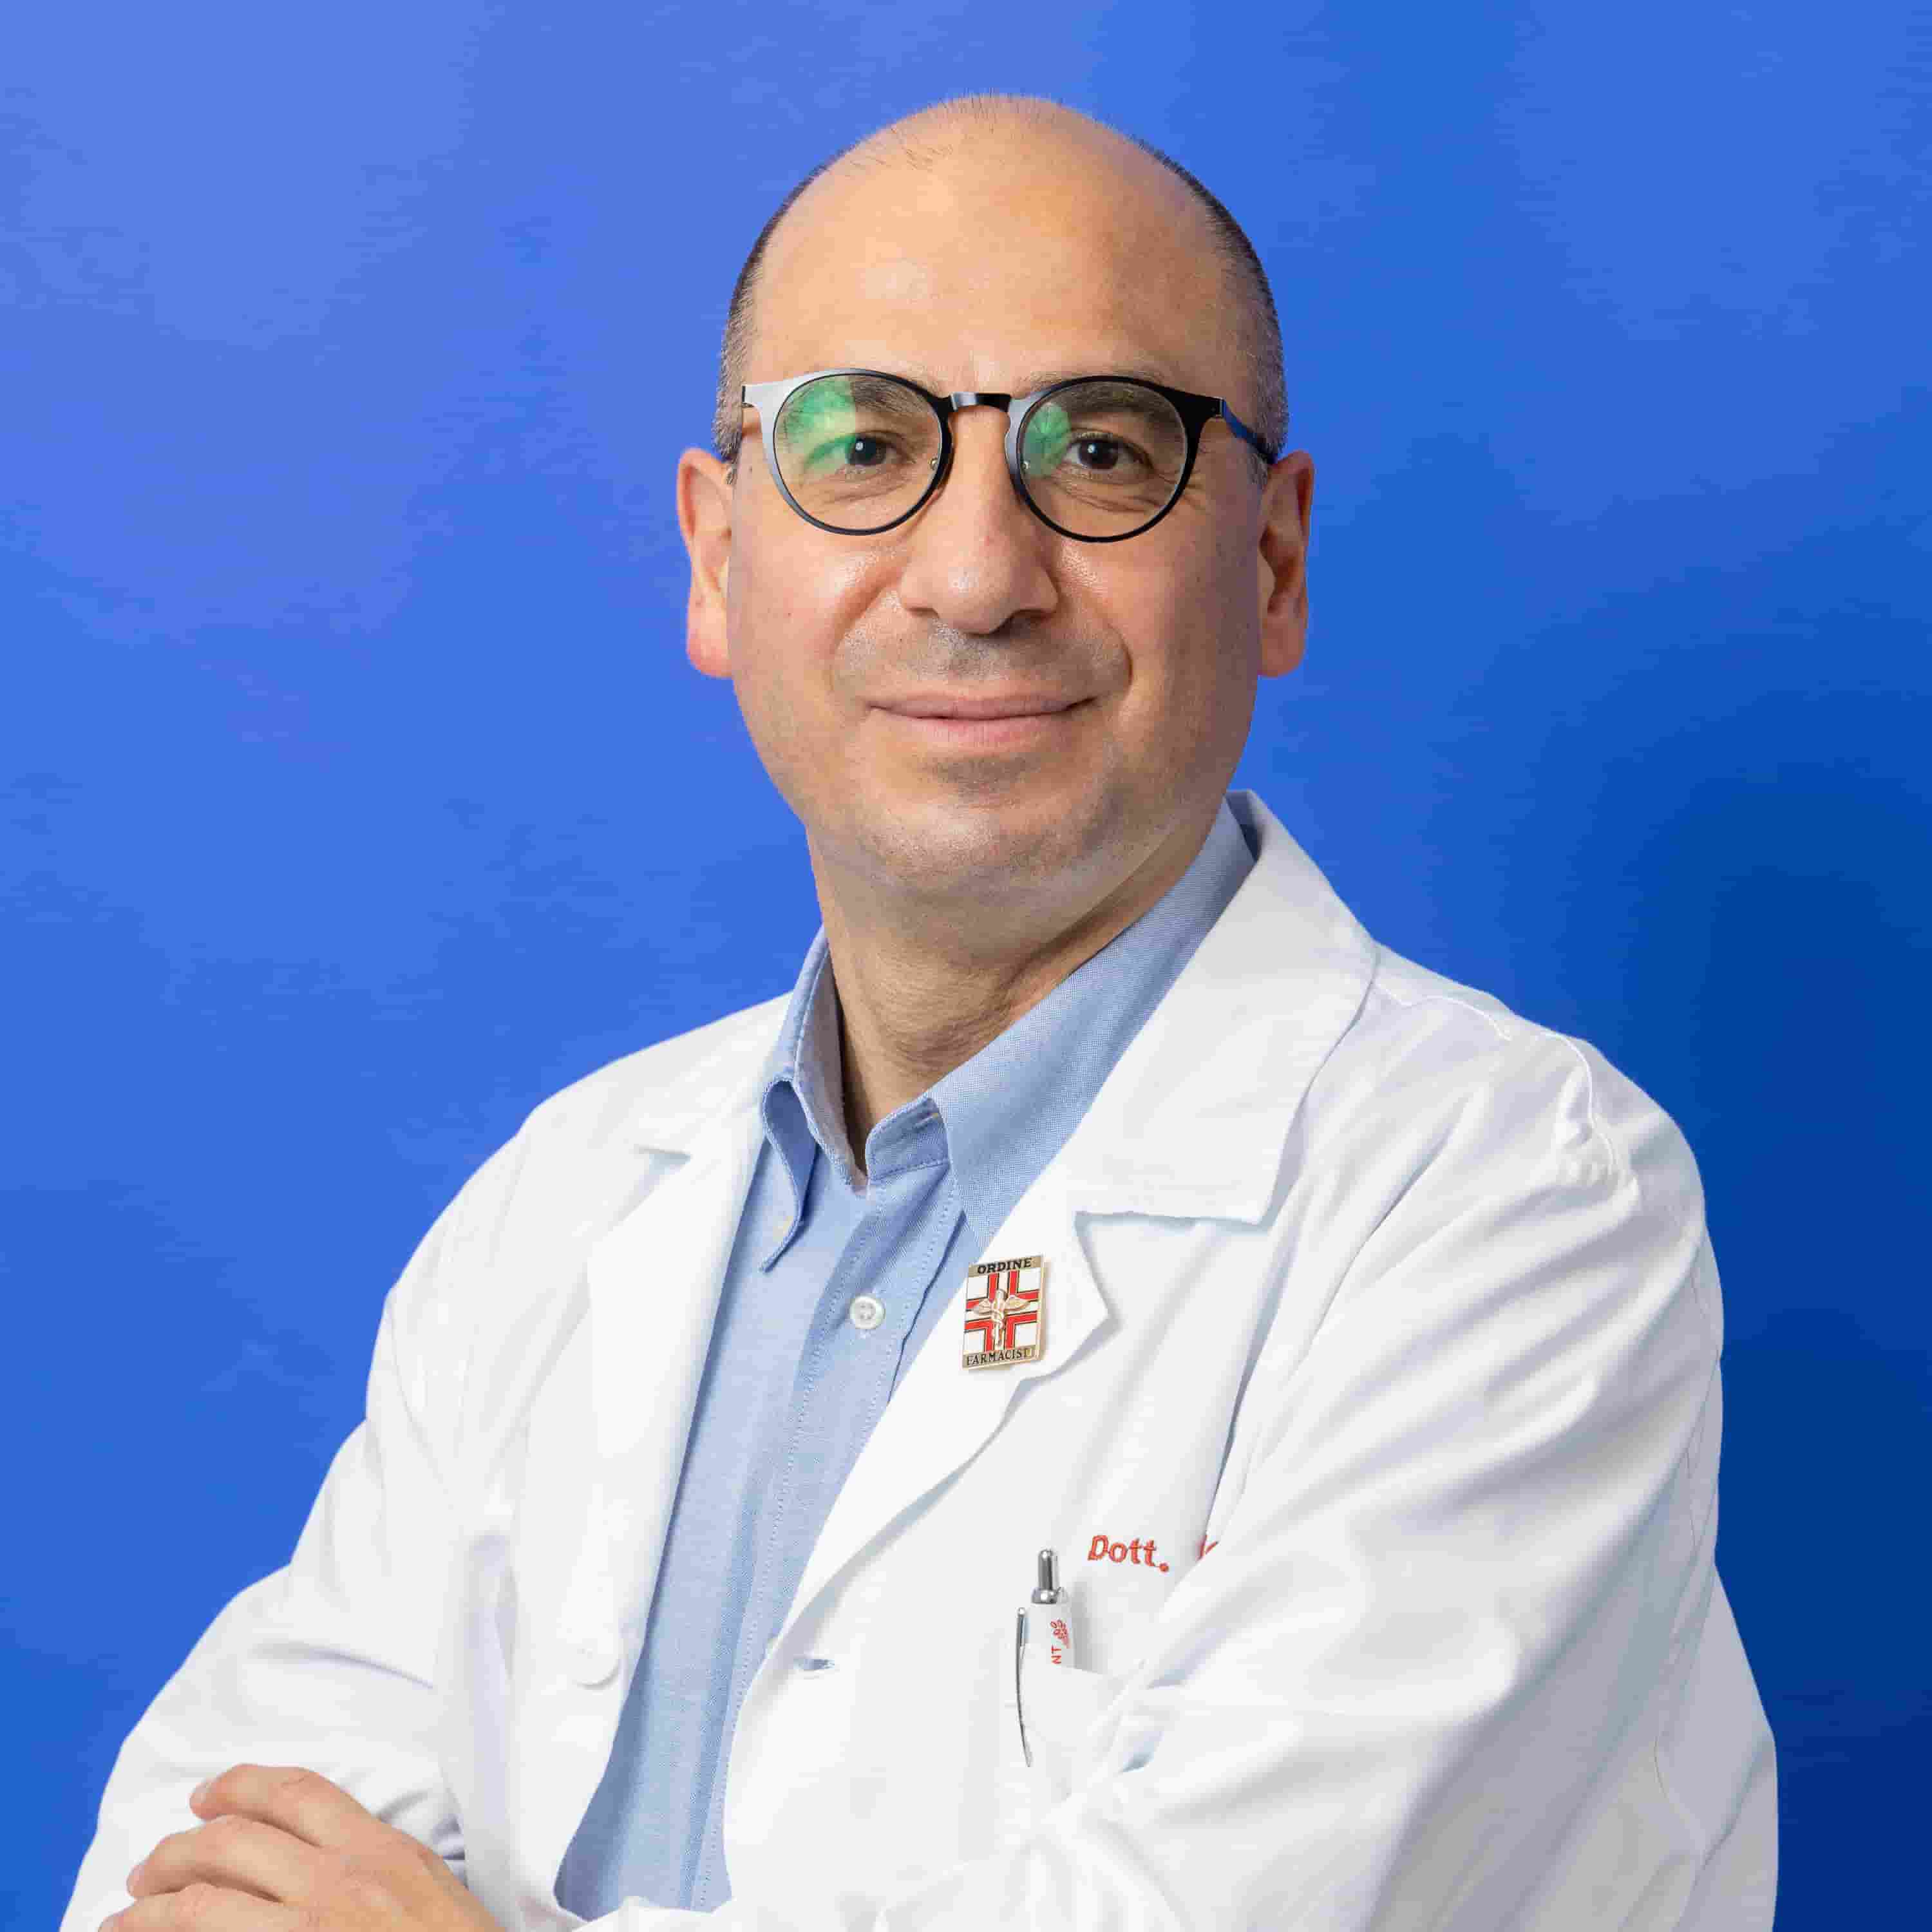 Dott. Gabriele Mascagni